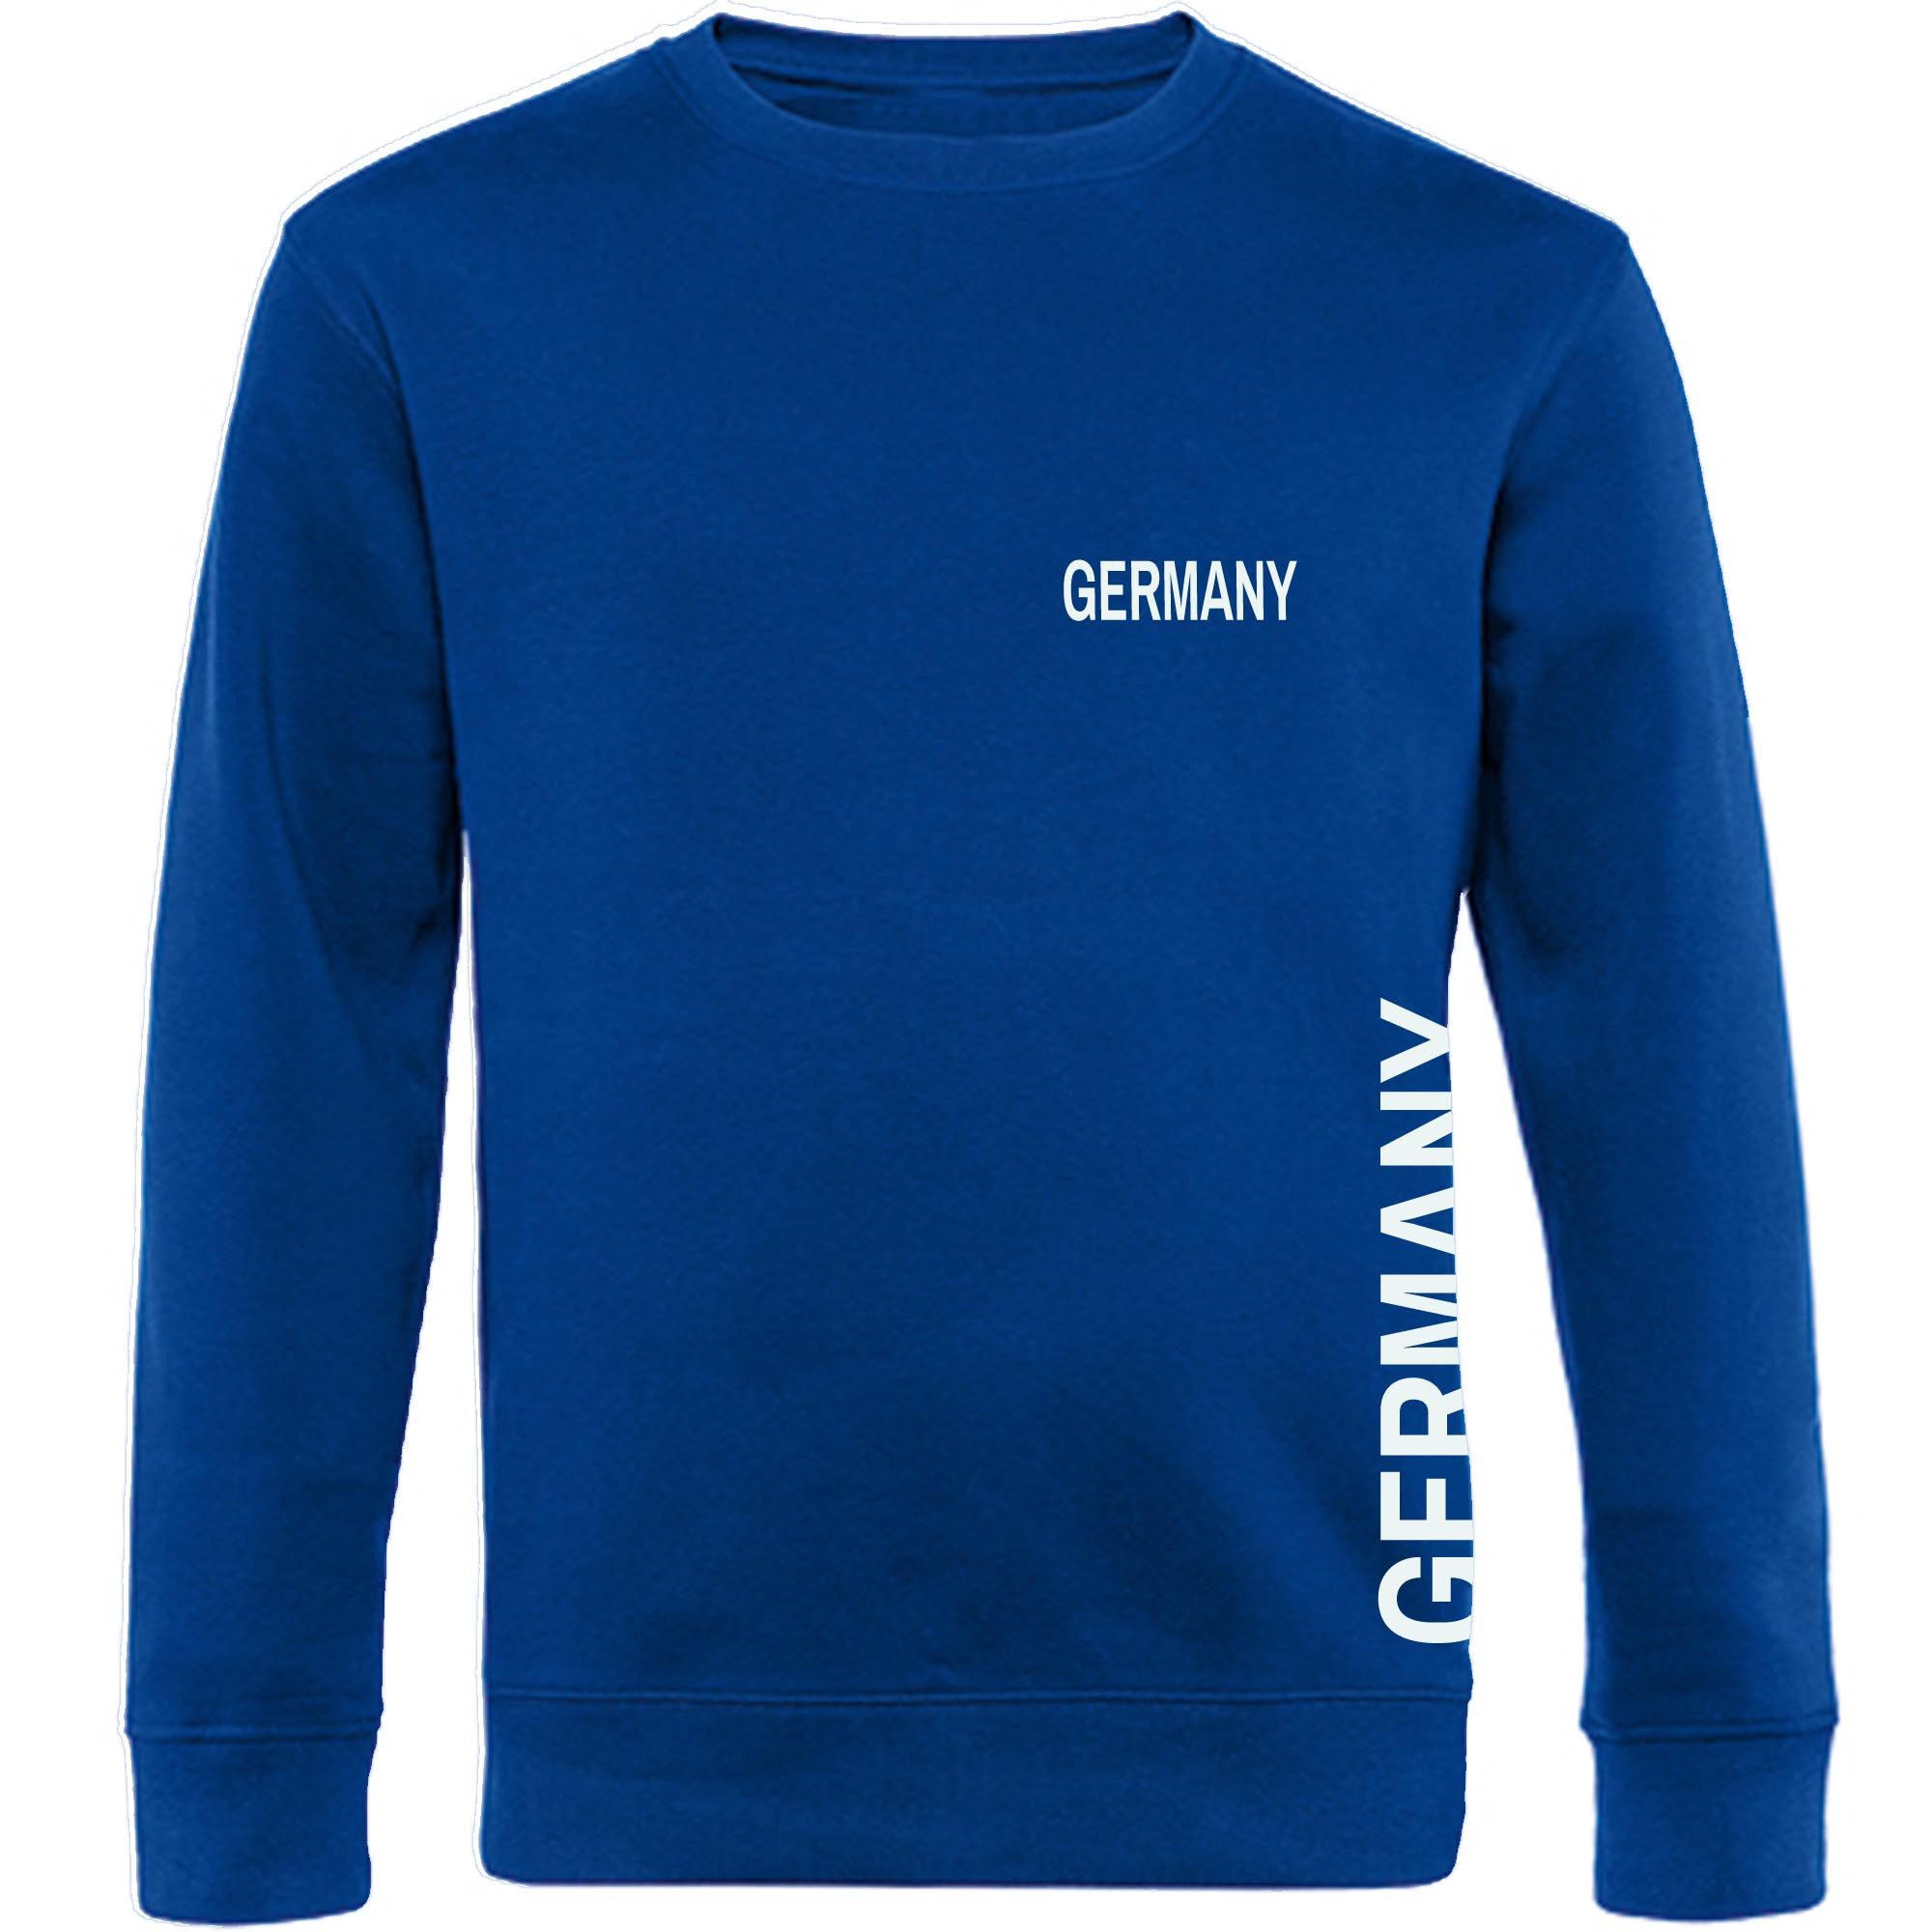 multifanshop Sweatshirt Germany - Brust & Seite - Pullover